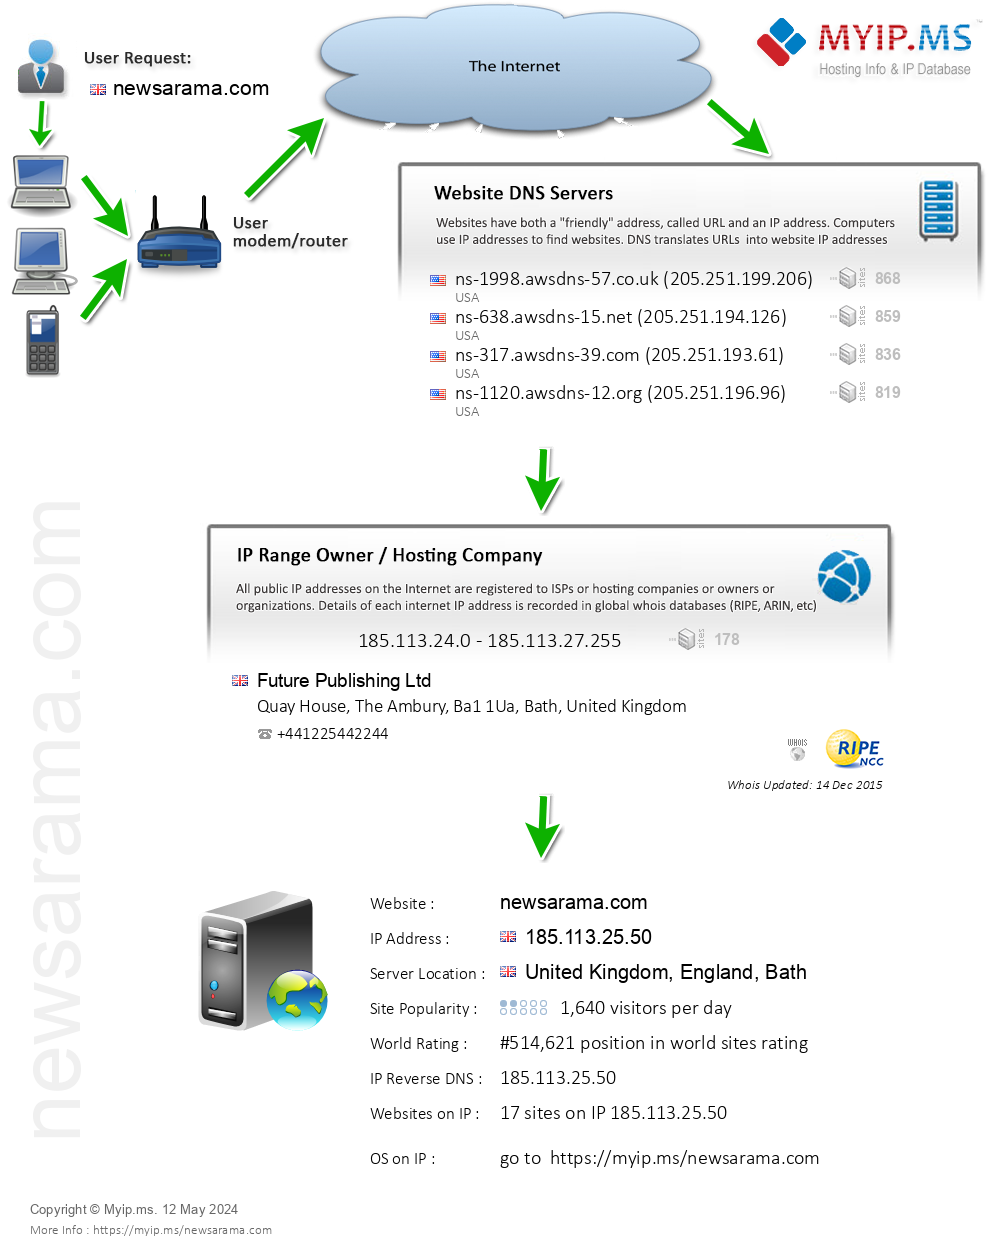 Newsarama.com - Website Hosting Visual IP Diagram